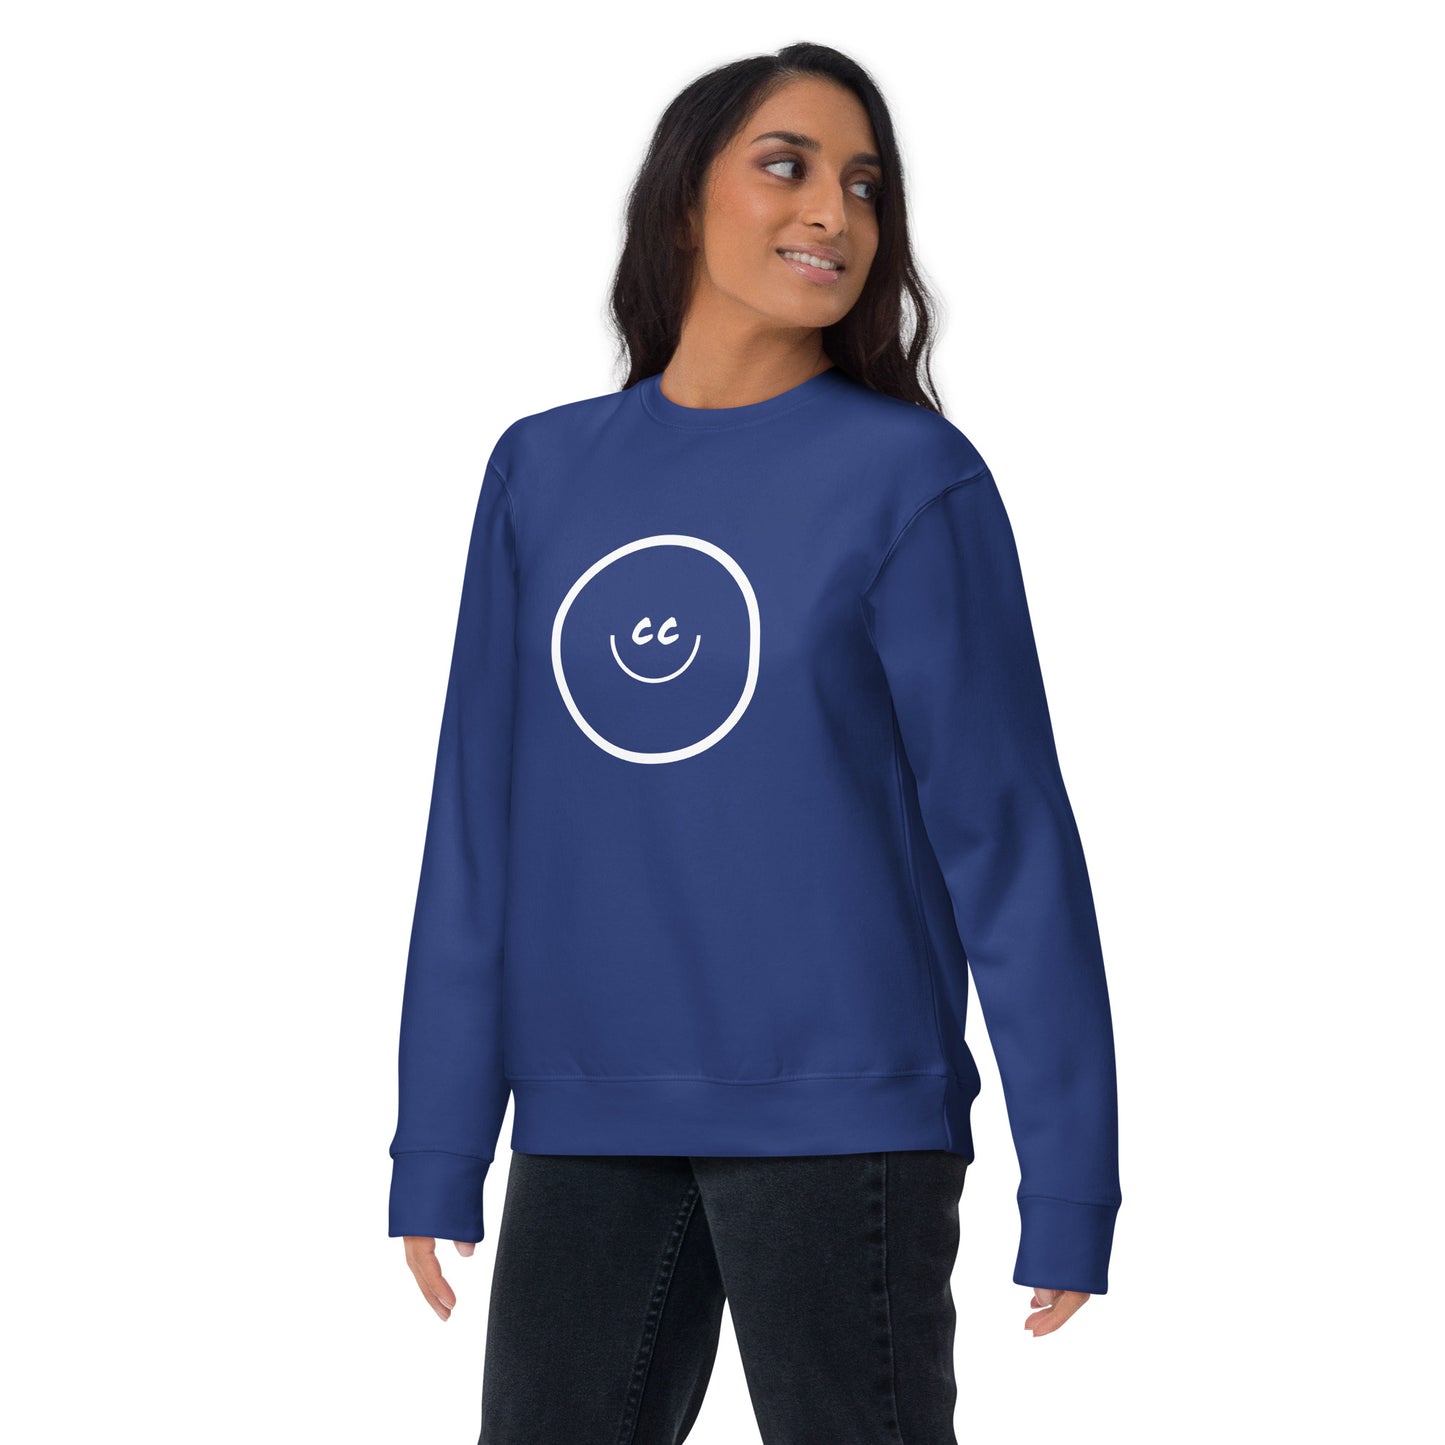 Big Smile Fleece in Royal - Sweatshirt